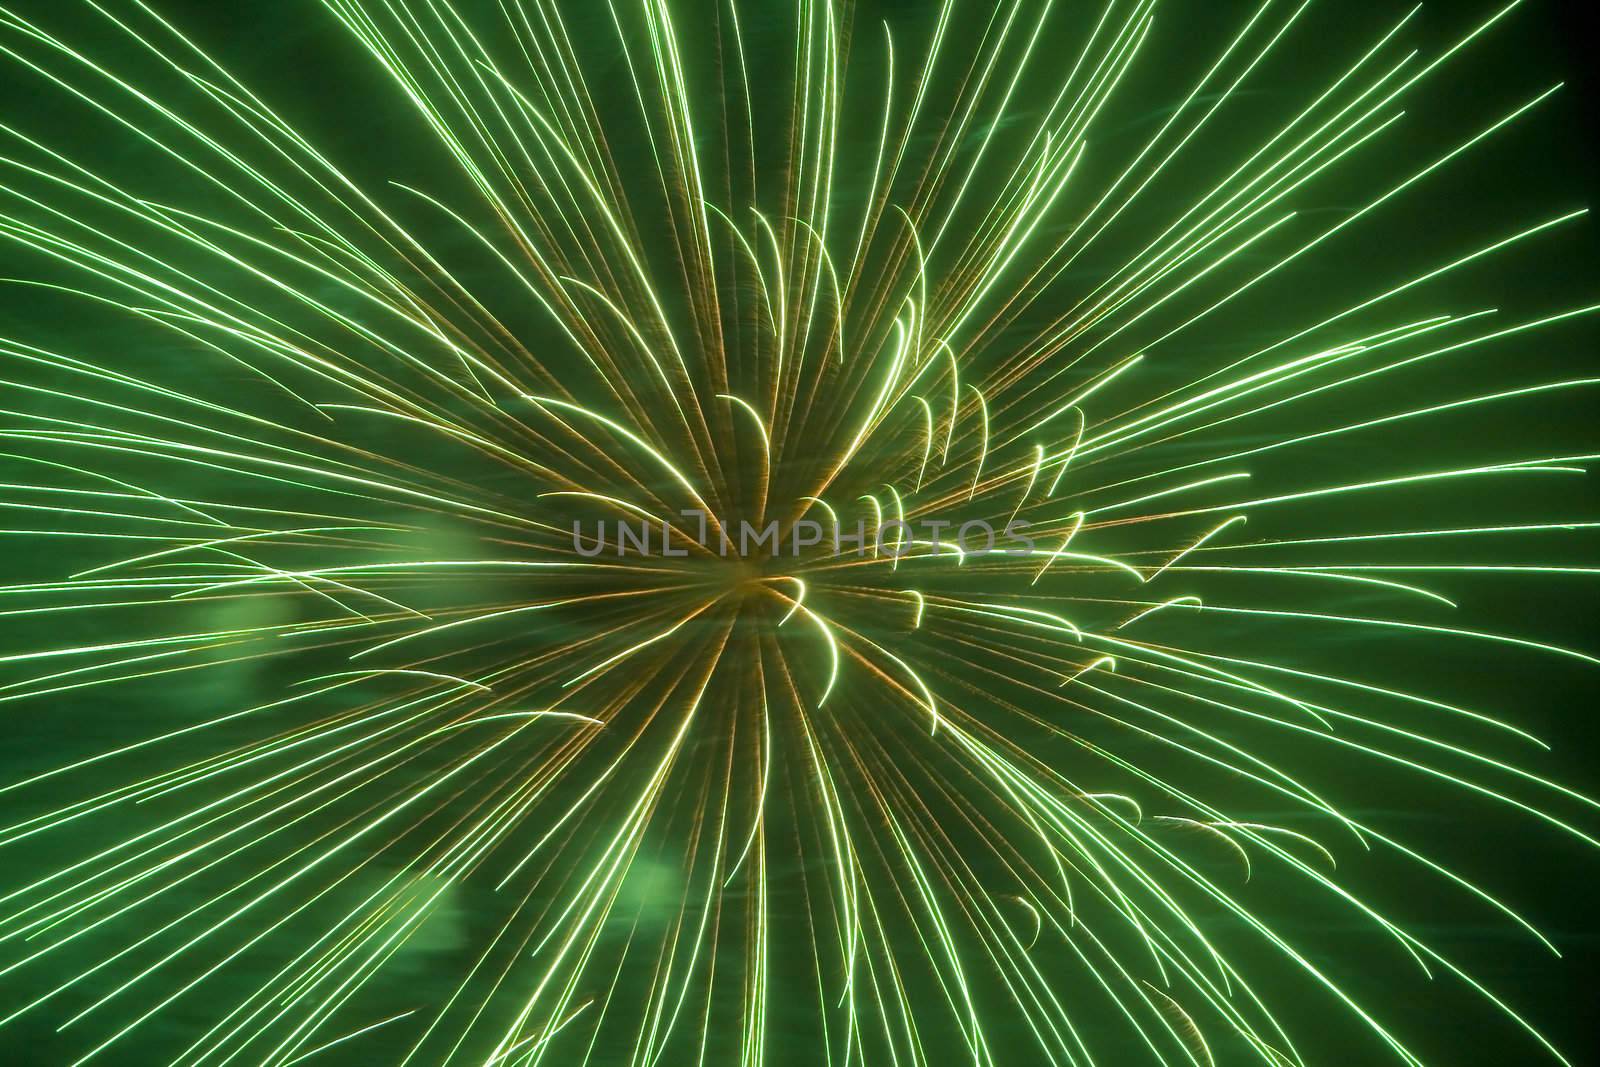 Fireworks 107 by Dan70